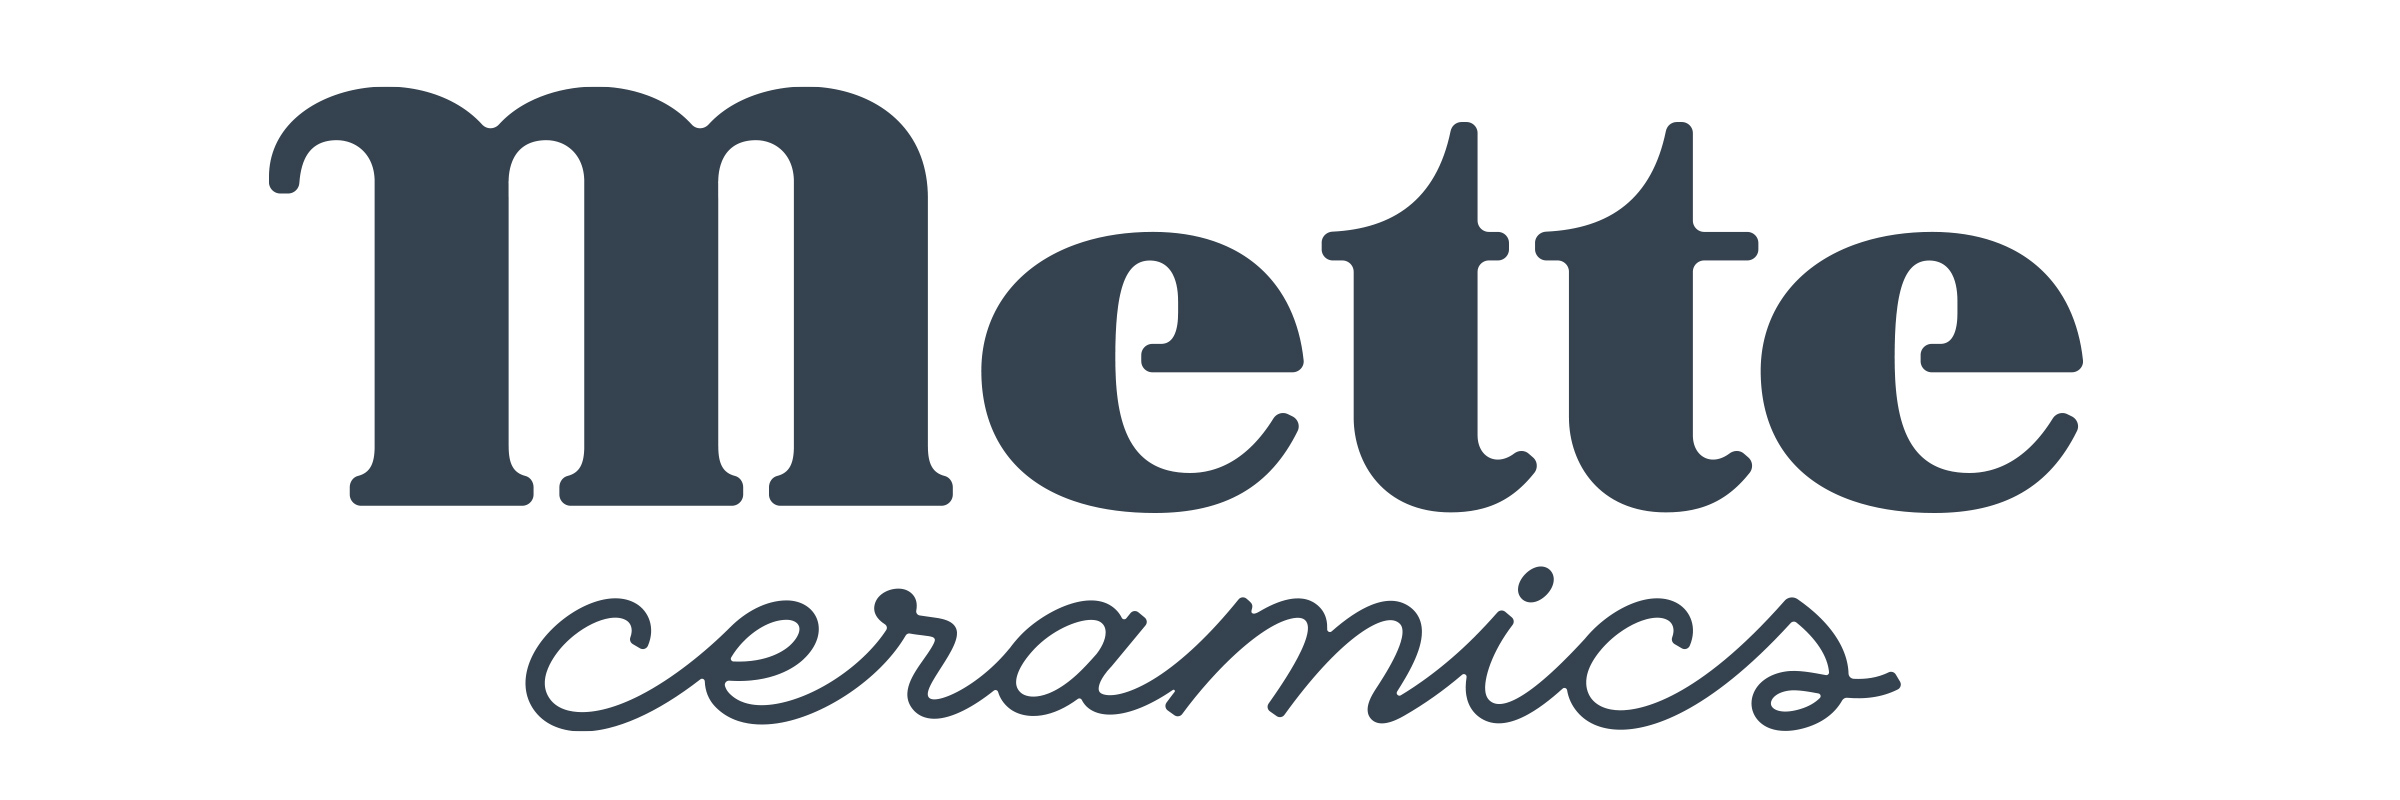 logo reading 'Mette ceramics'